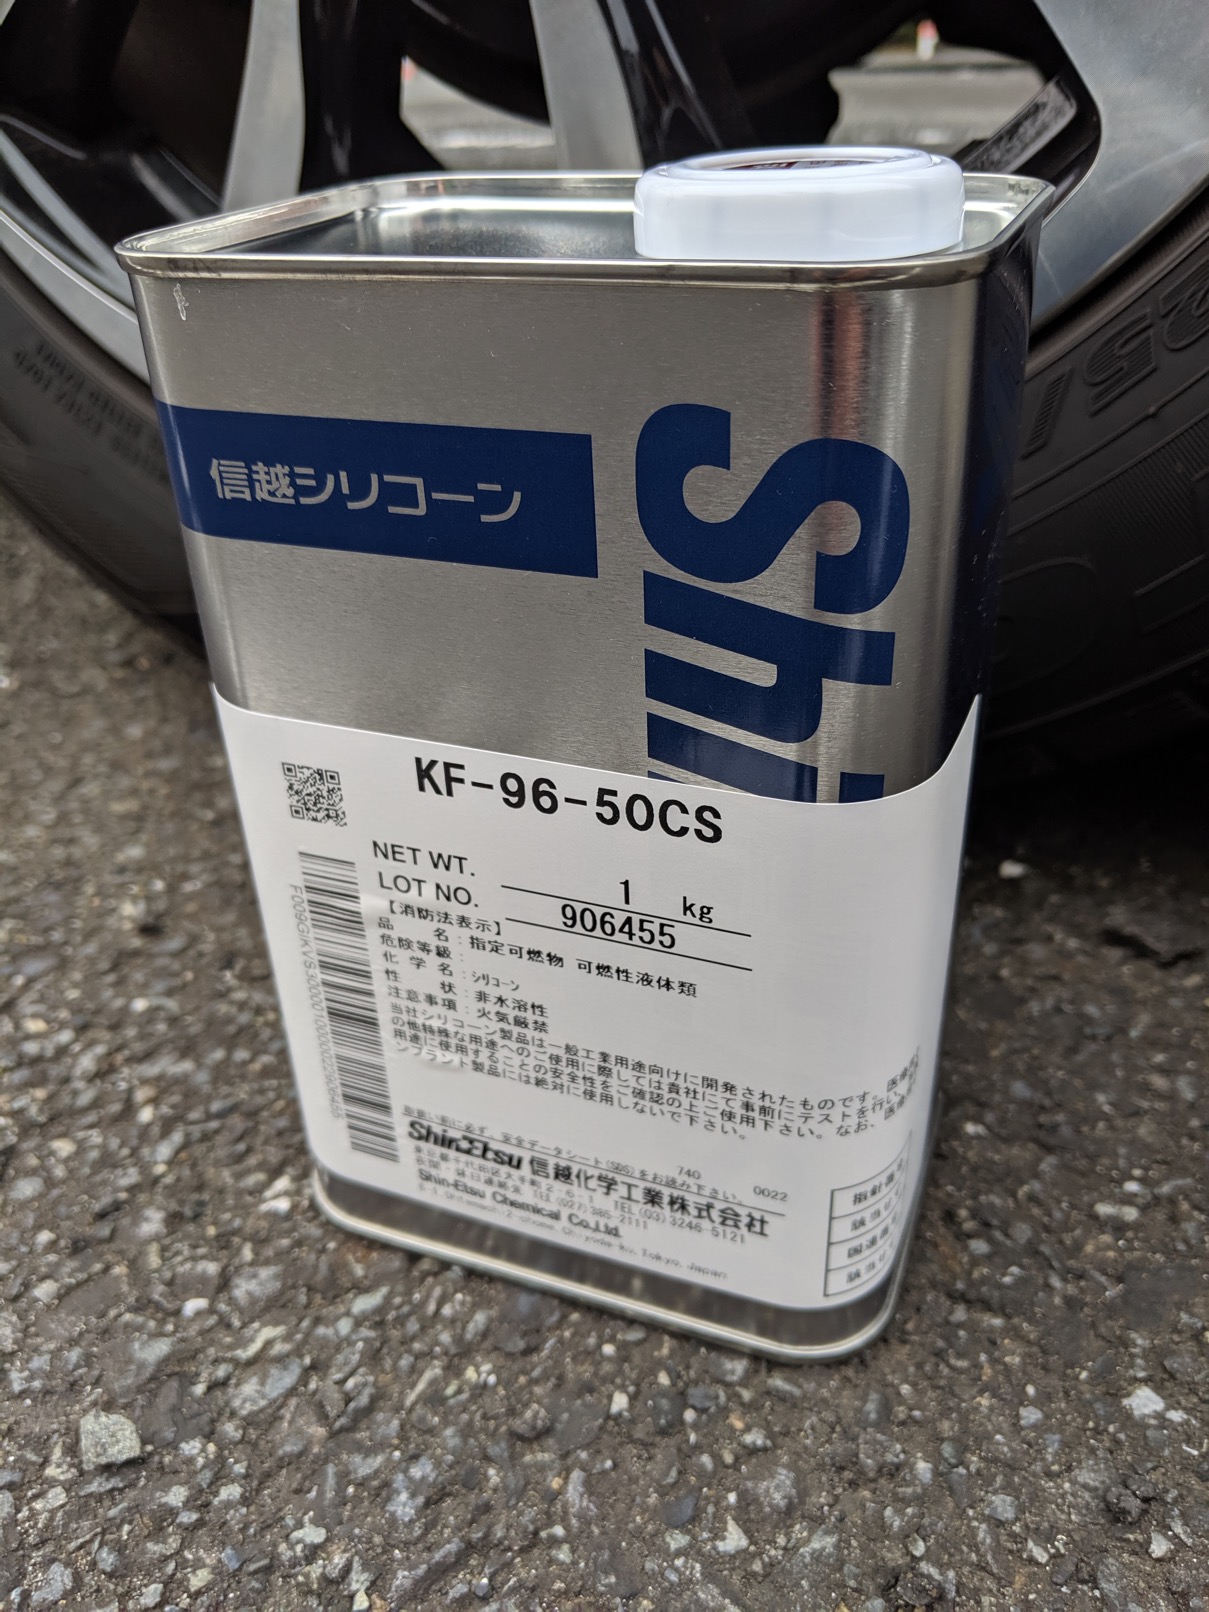 何かと話題の信越化学工業シリコーンオイルKF-96-50csを樹脂部に塗ってみた。これは良いものだ。 @ayurina